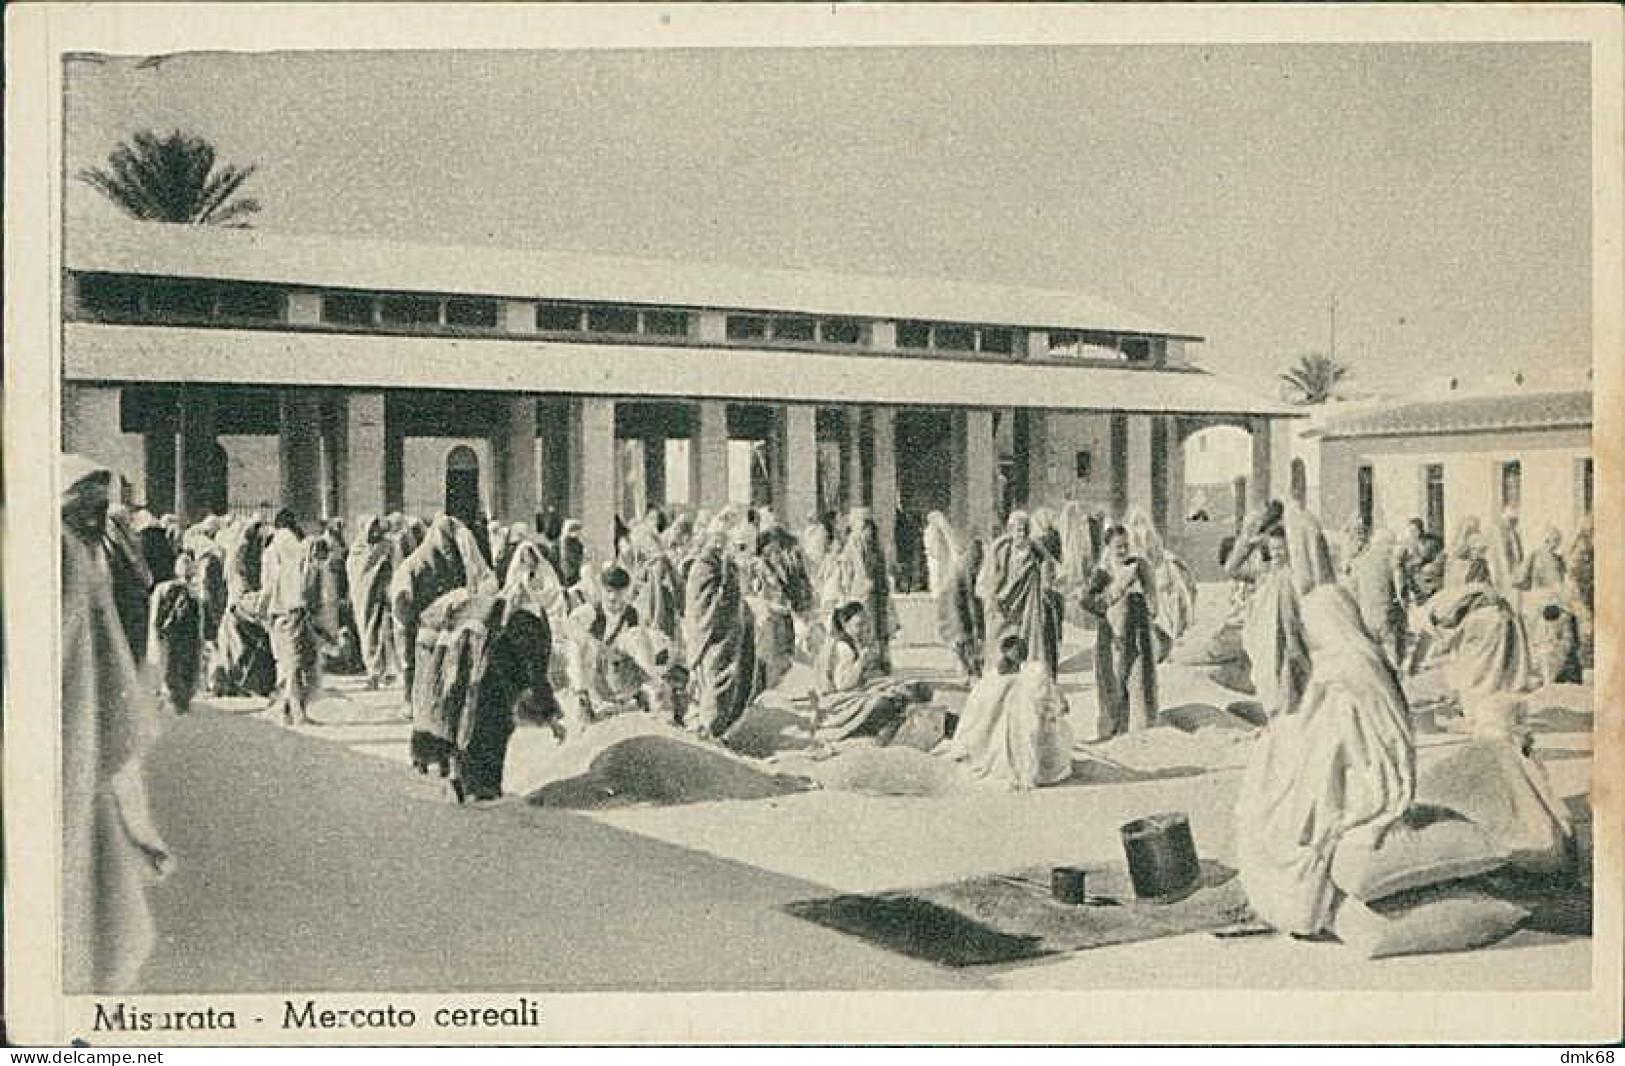 LIBIA / LIBYA - Misrata / MISURATA - MARKET / MERCATO CEREALI - ED. ABDALLA HEMA - FOTOGIORDANELLA - 1930s  (12431) - Libyen